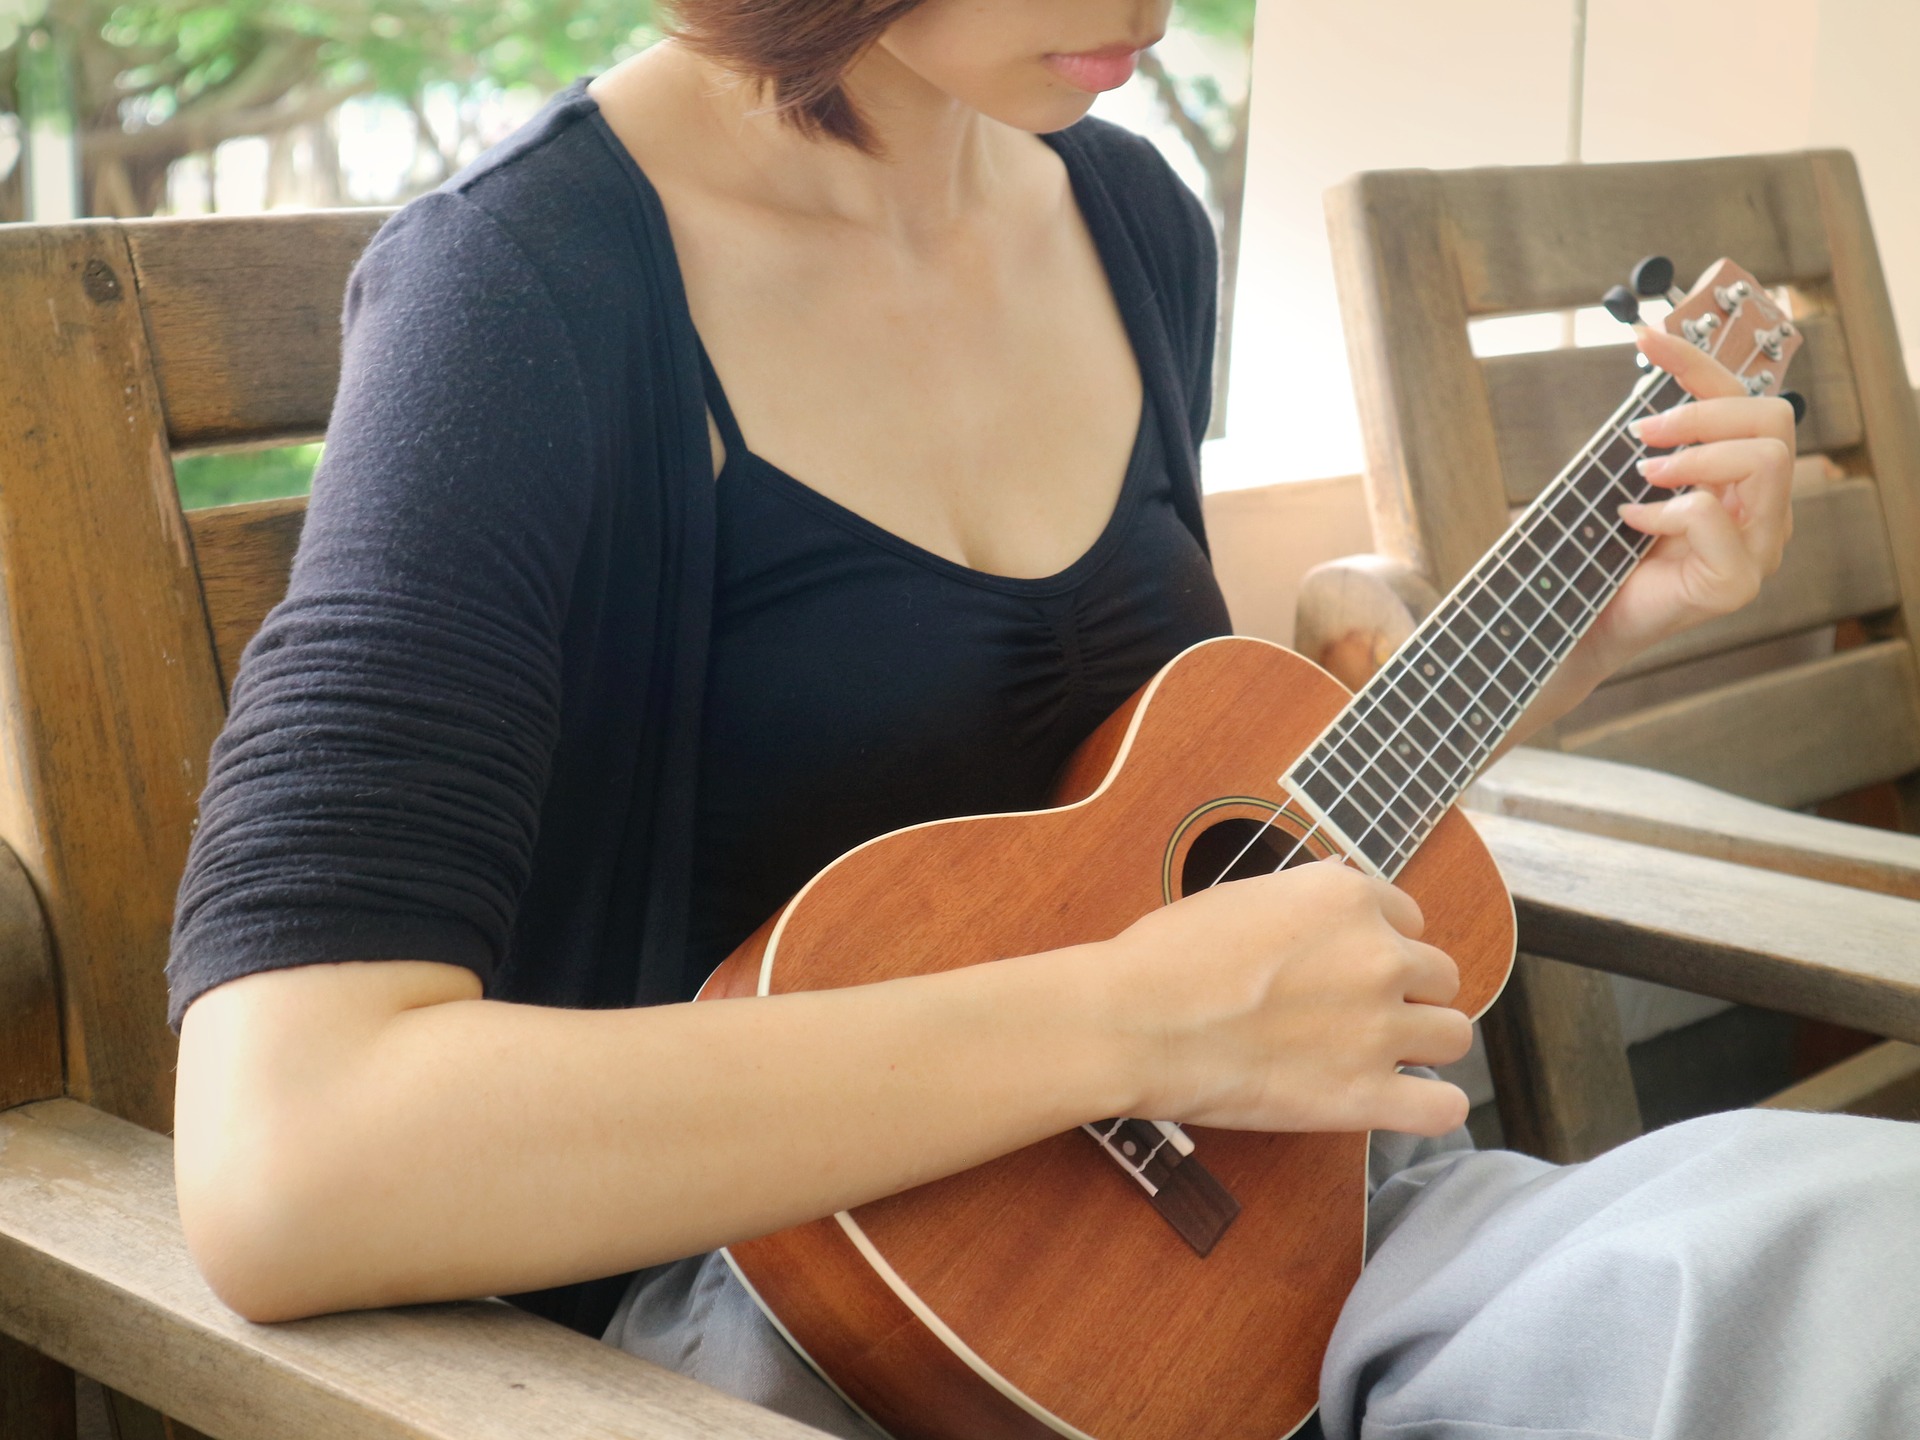 Imparare uno strumento musicale con i corsi online